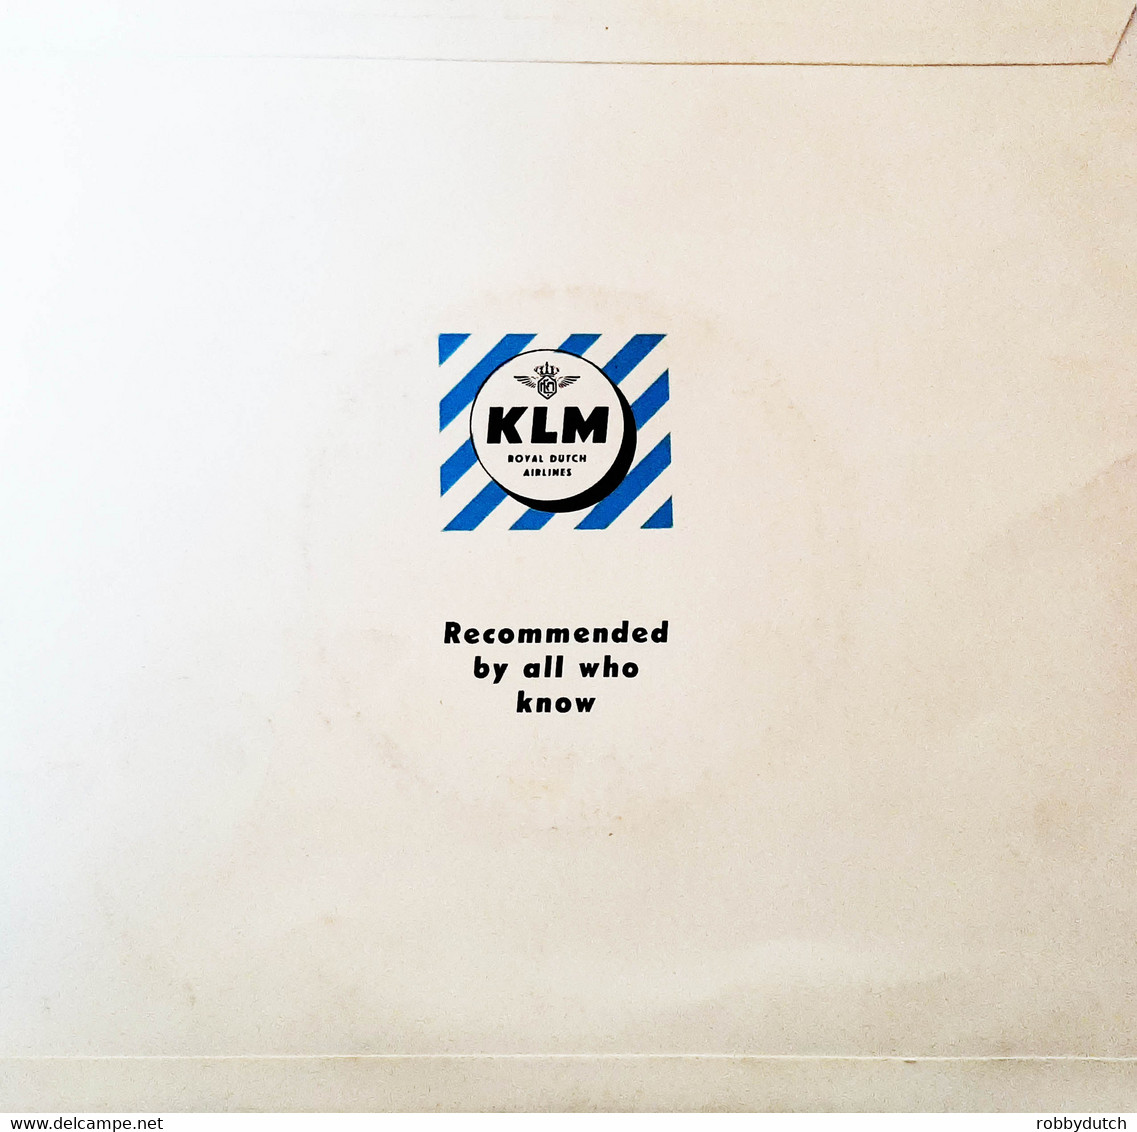 * 7" EP *  WIENER TRIO GEZA SEYDL - PROMO KLM (EX!!) - World Music